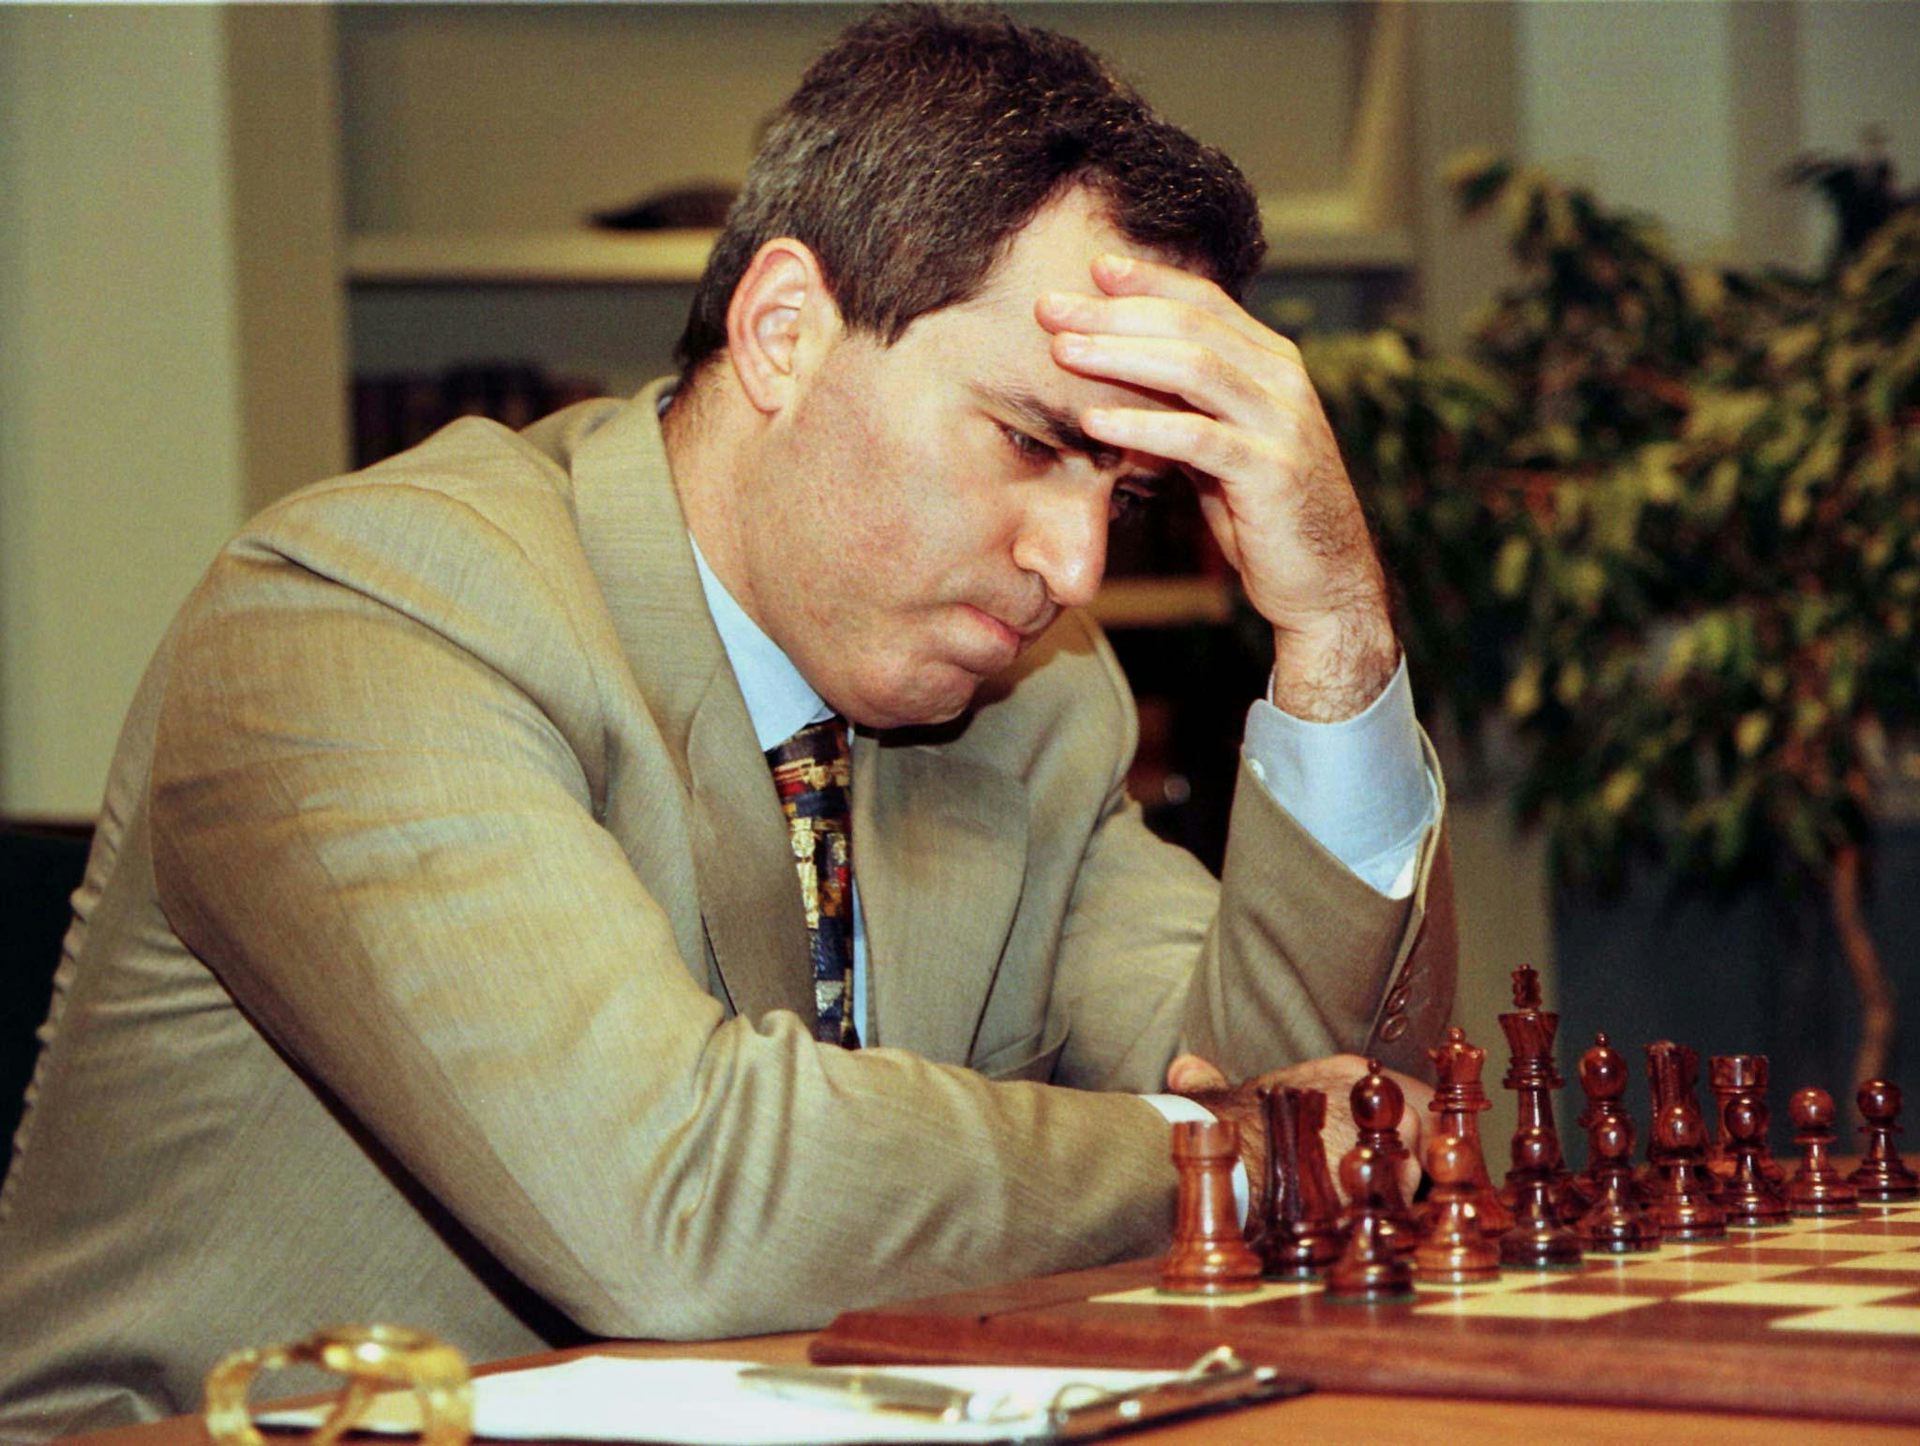 kasparov chess guy